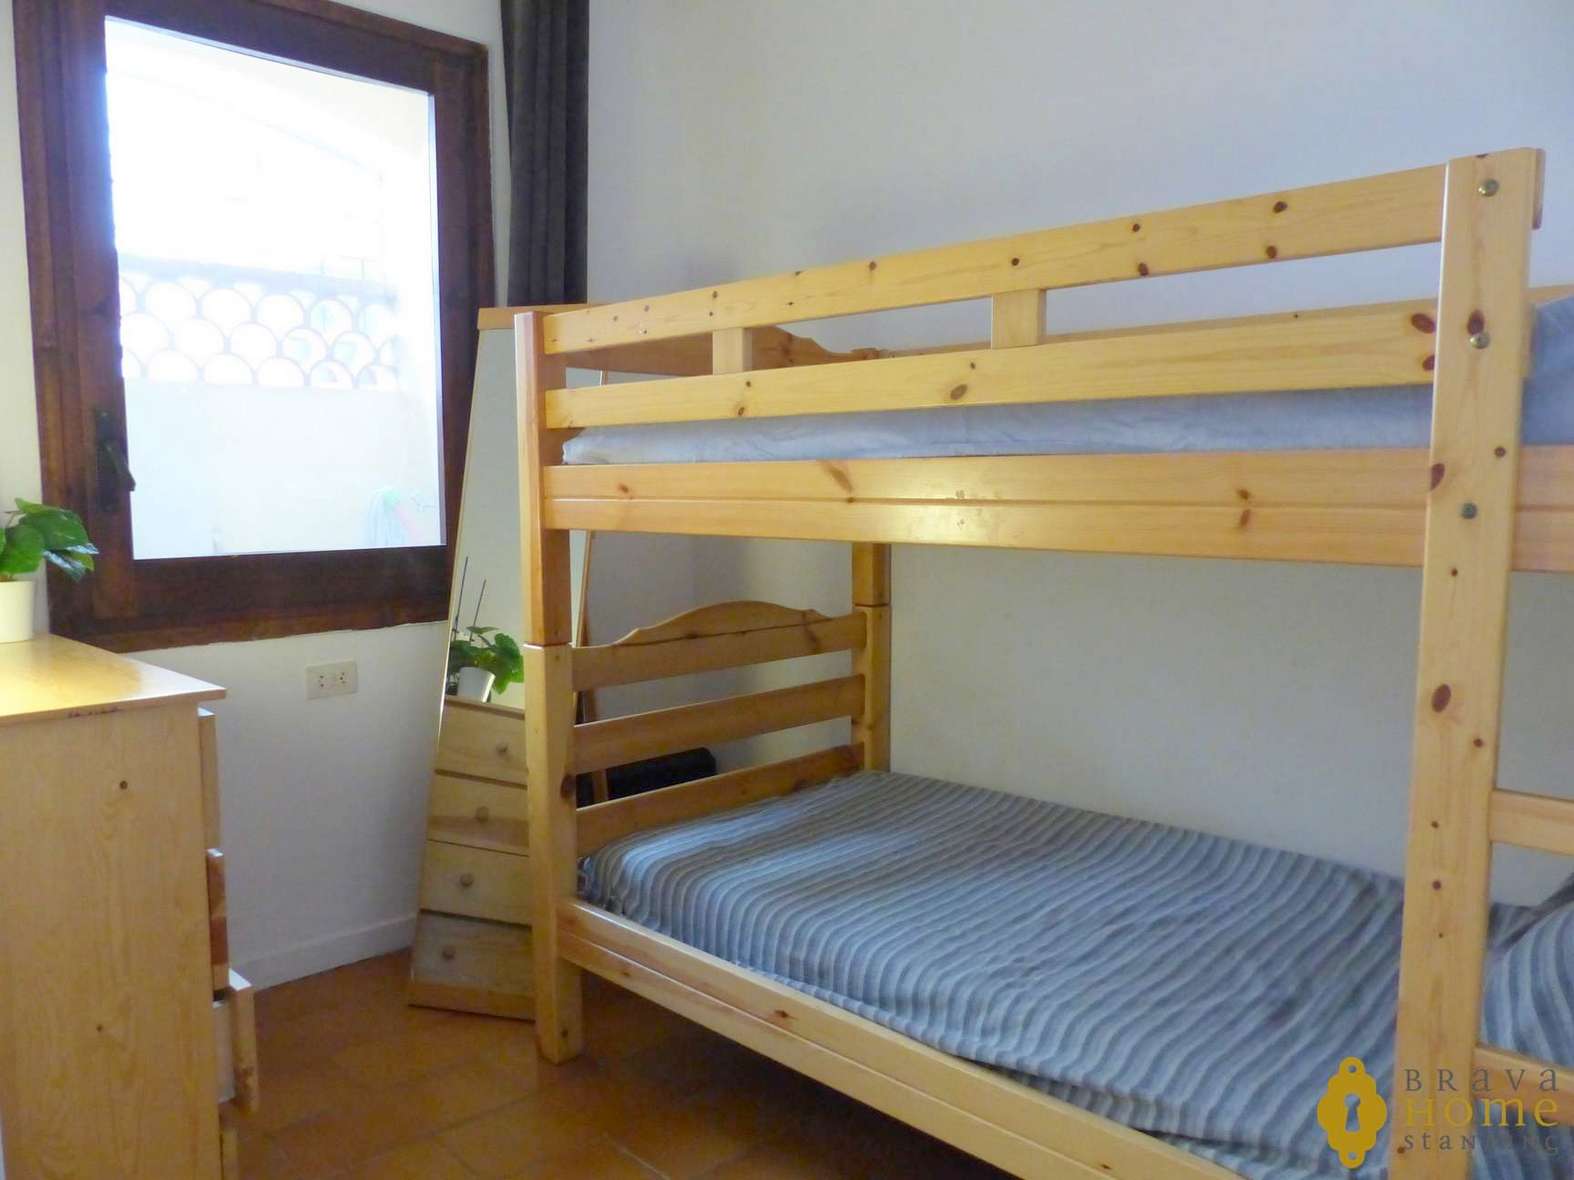 Bonito apartamento de 2 dormitorios a 100m de la playa en venta en Empuriabrava